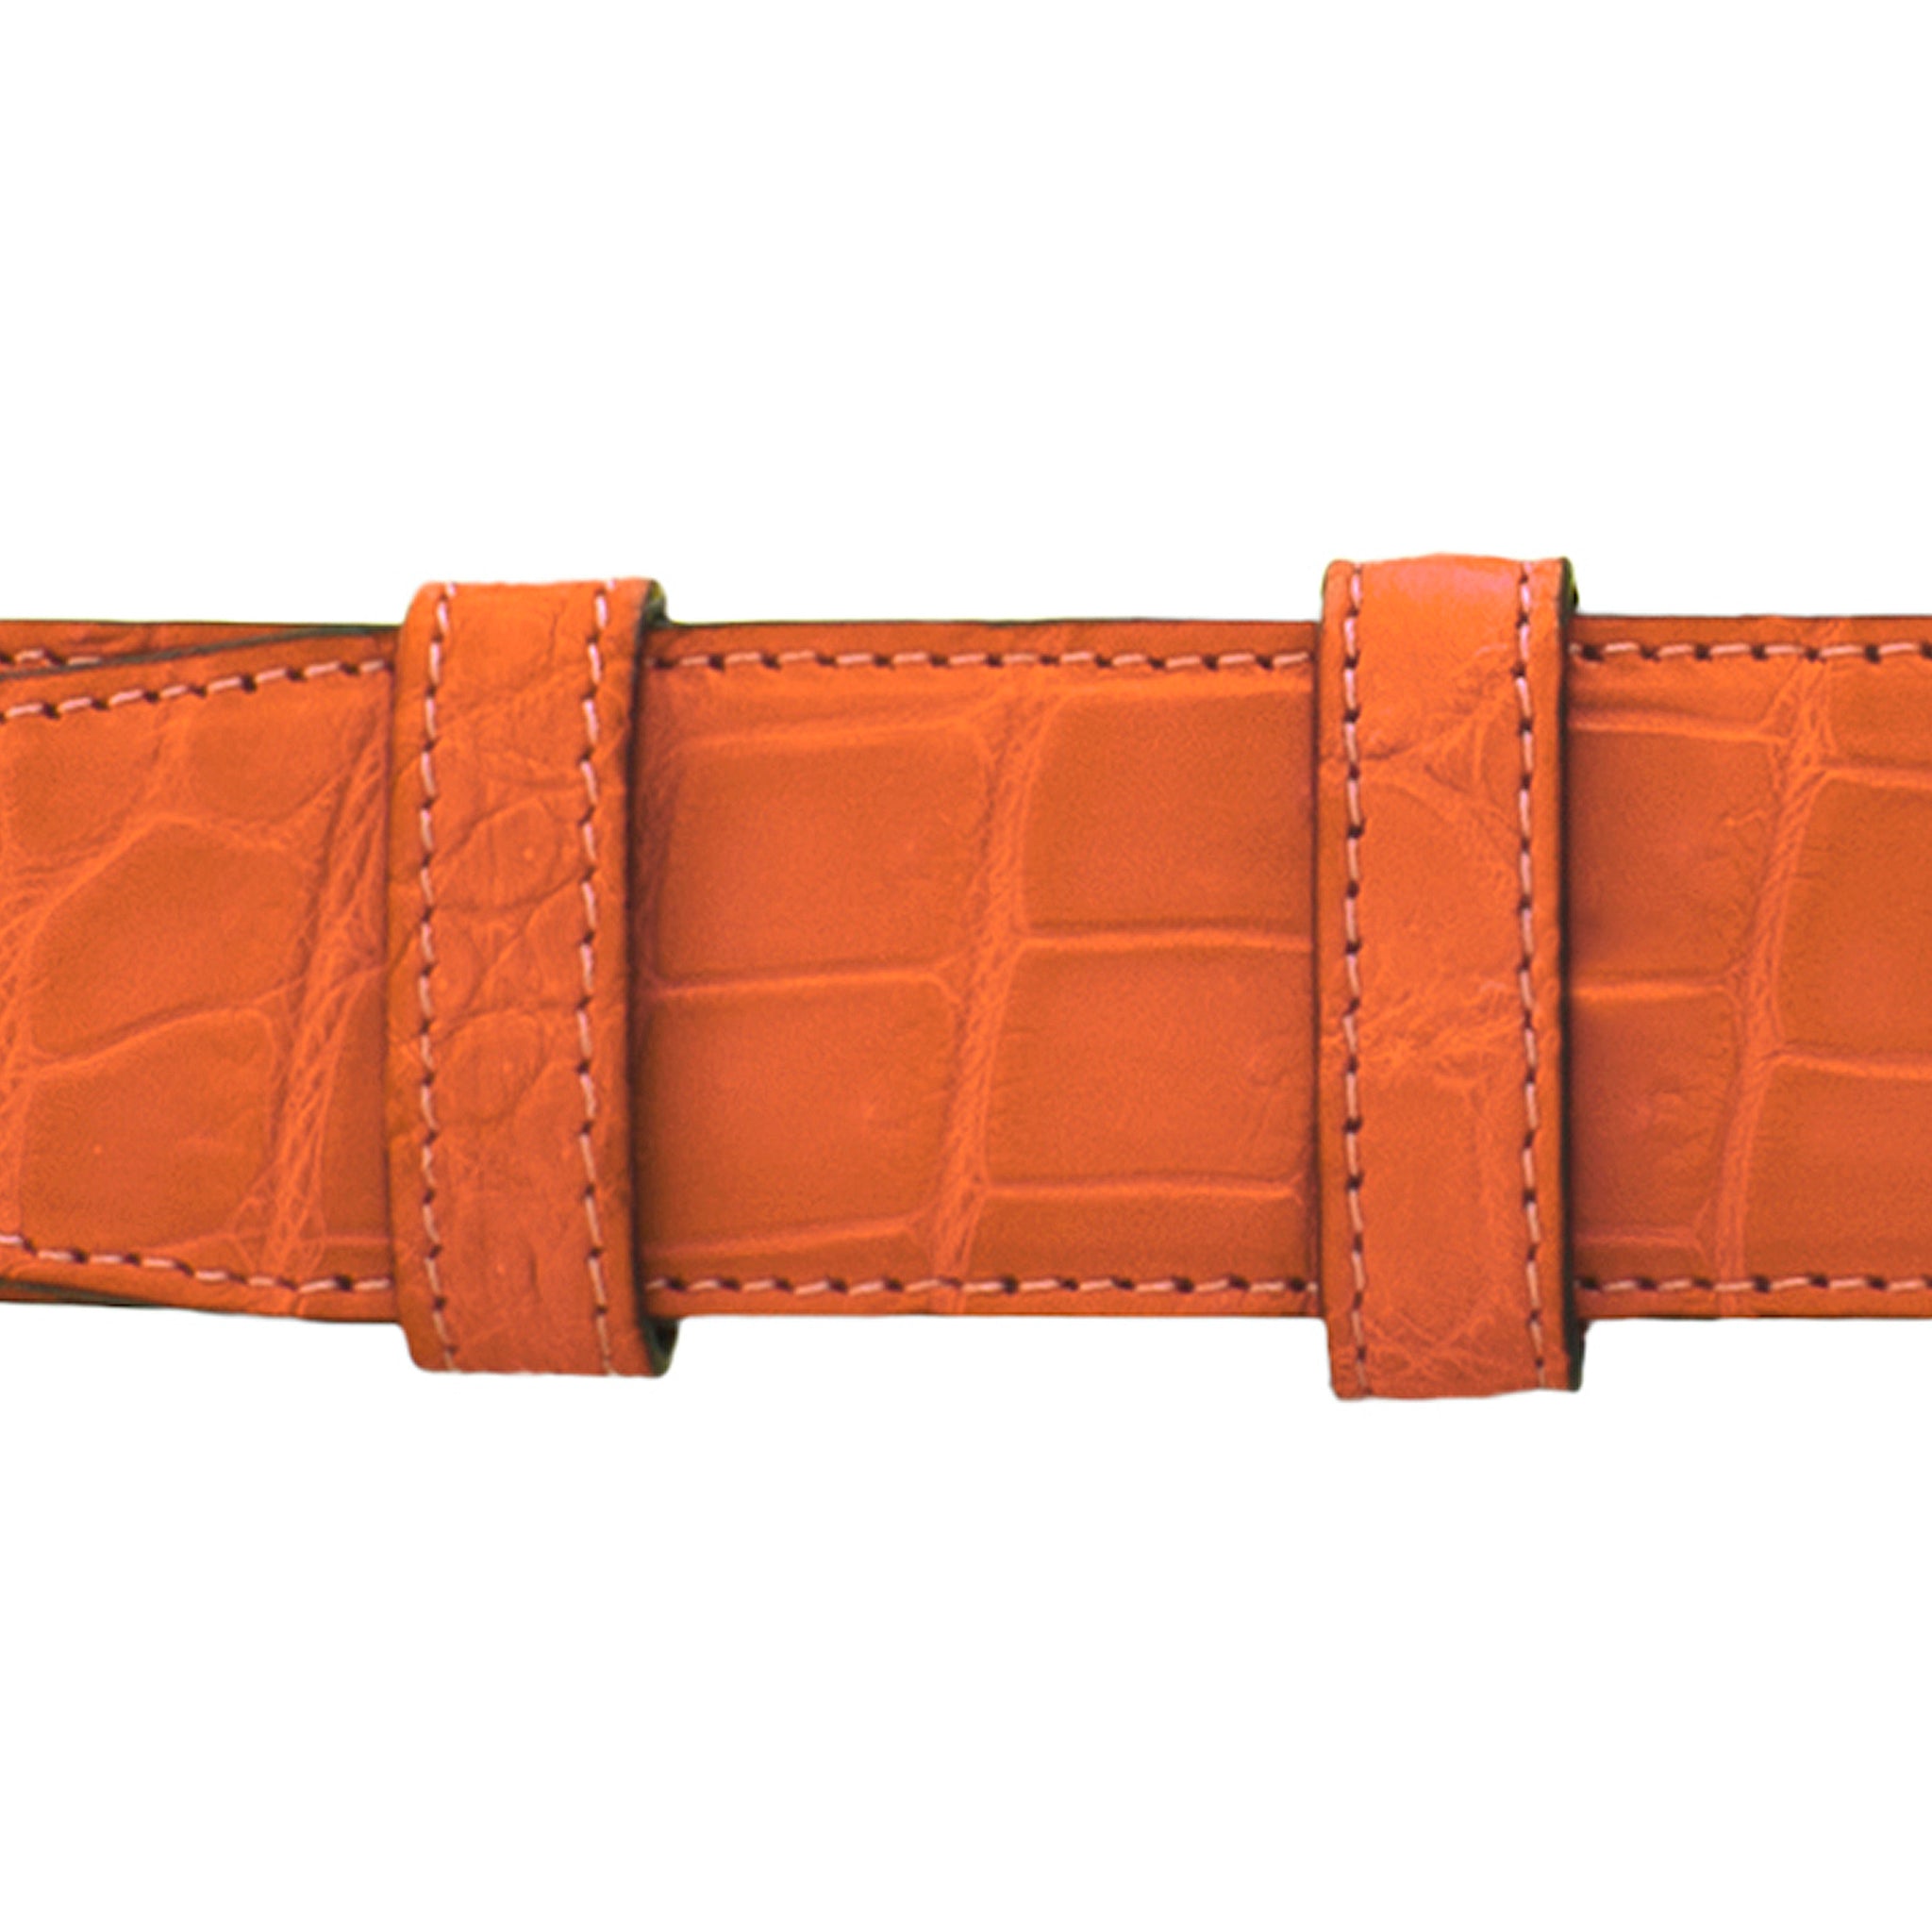 1 1/4" Orange Seasonal Belt with Crawford Casual Buckle in Polished Nickel